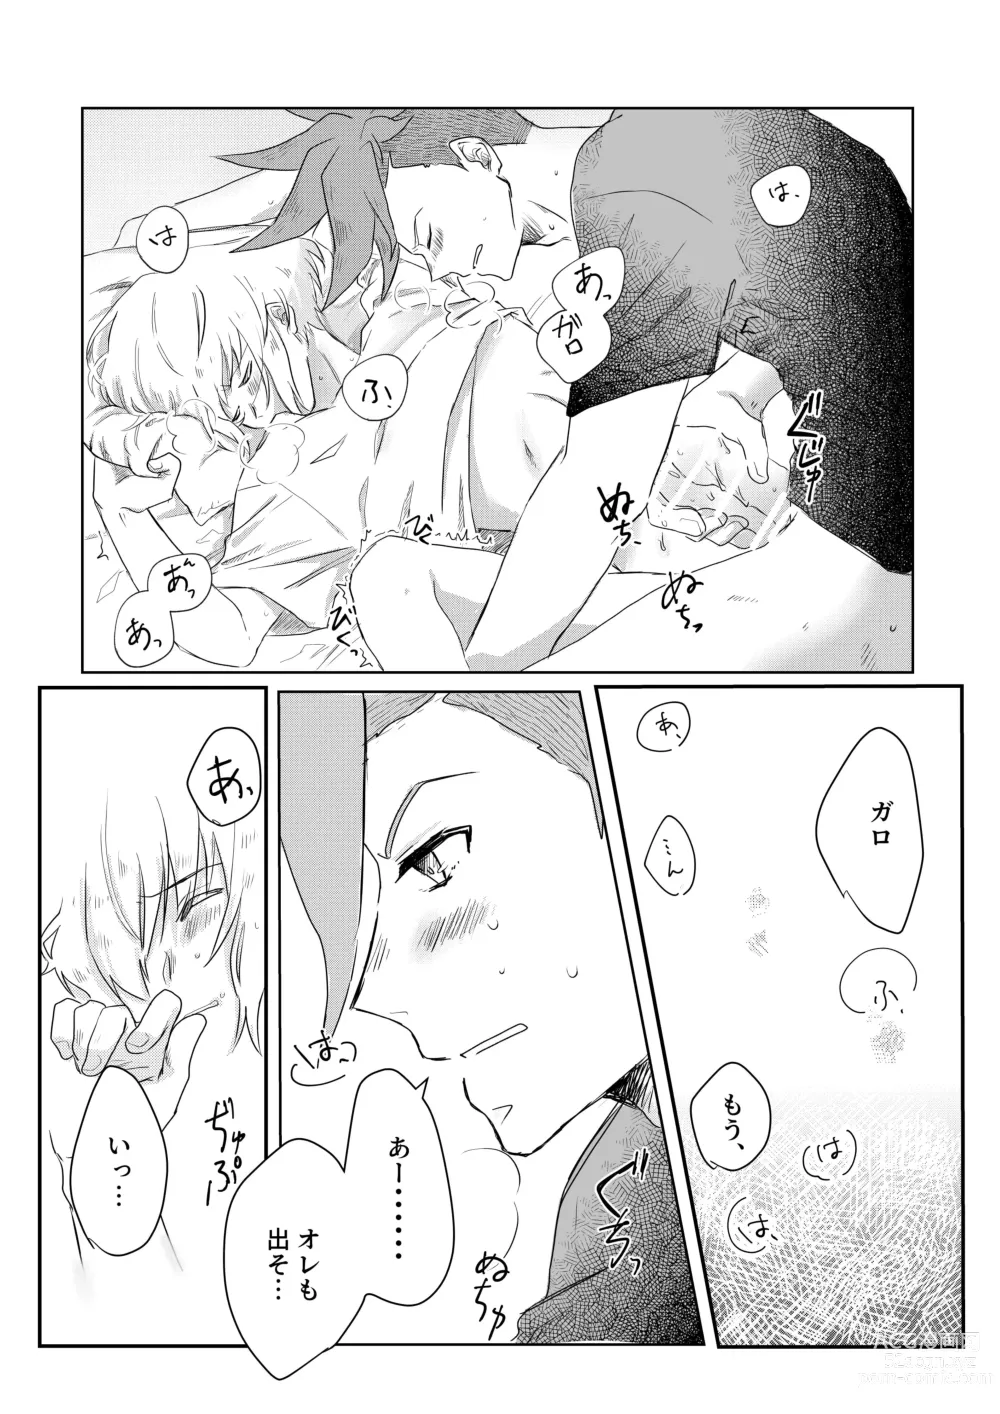 Page 12 of doujinshi Ohayou, Oyasumi, Mata Ashita.